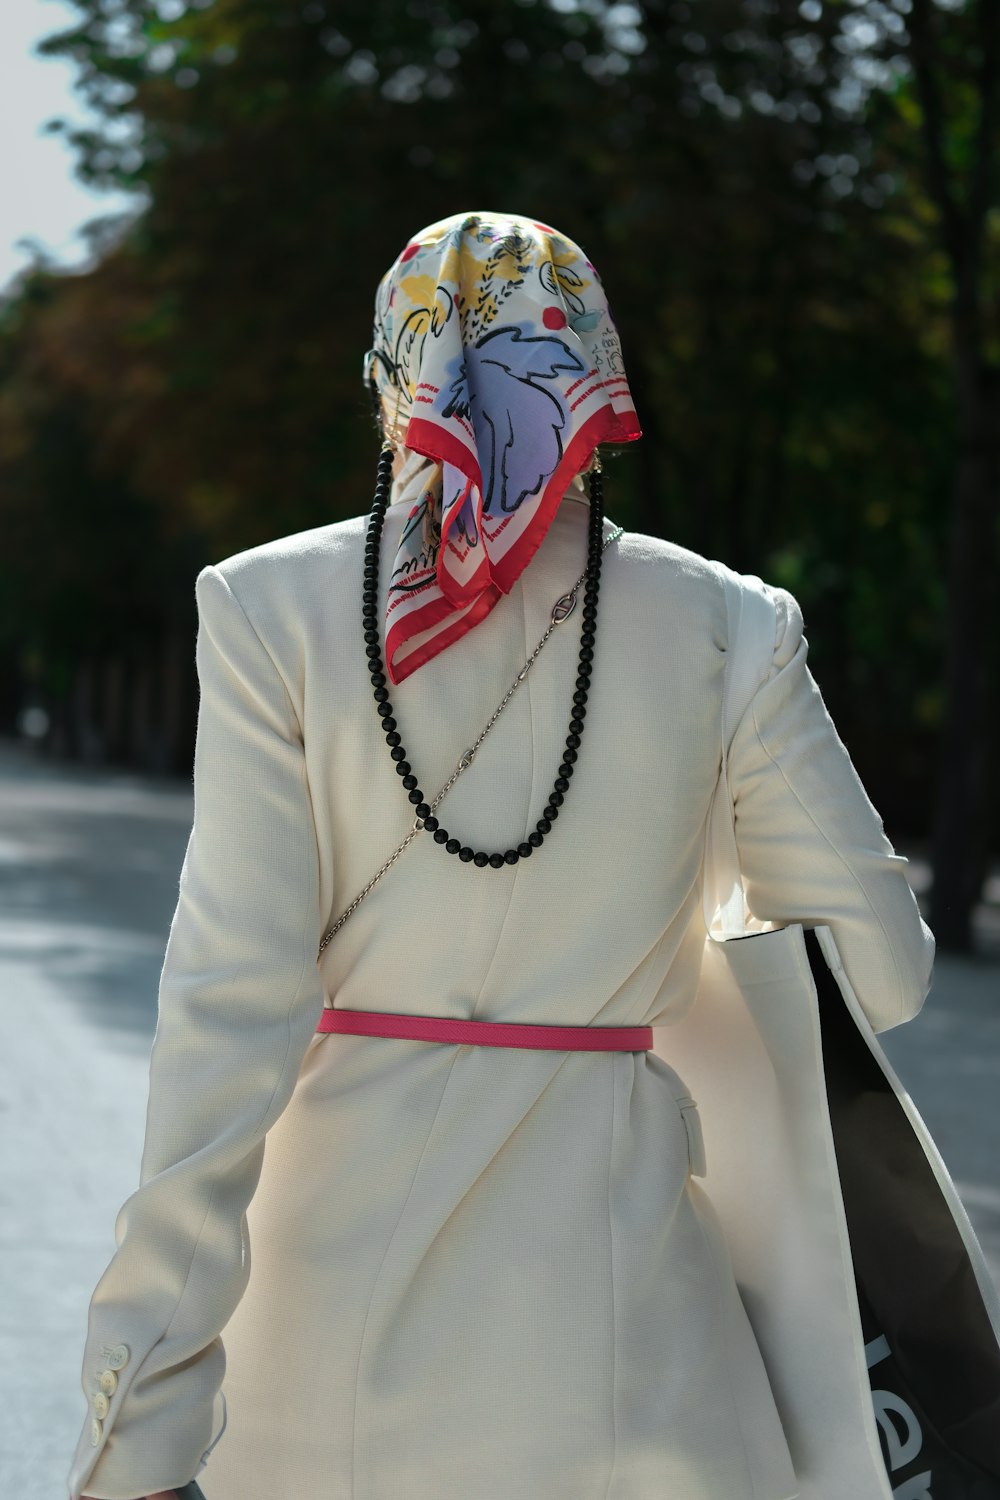 μια γυναίκα με λευκό παλτό και κόκκινο-λευκό κασκόλ